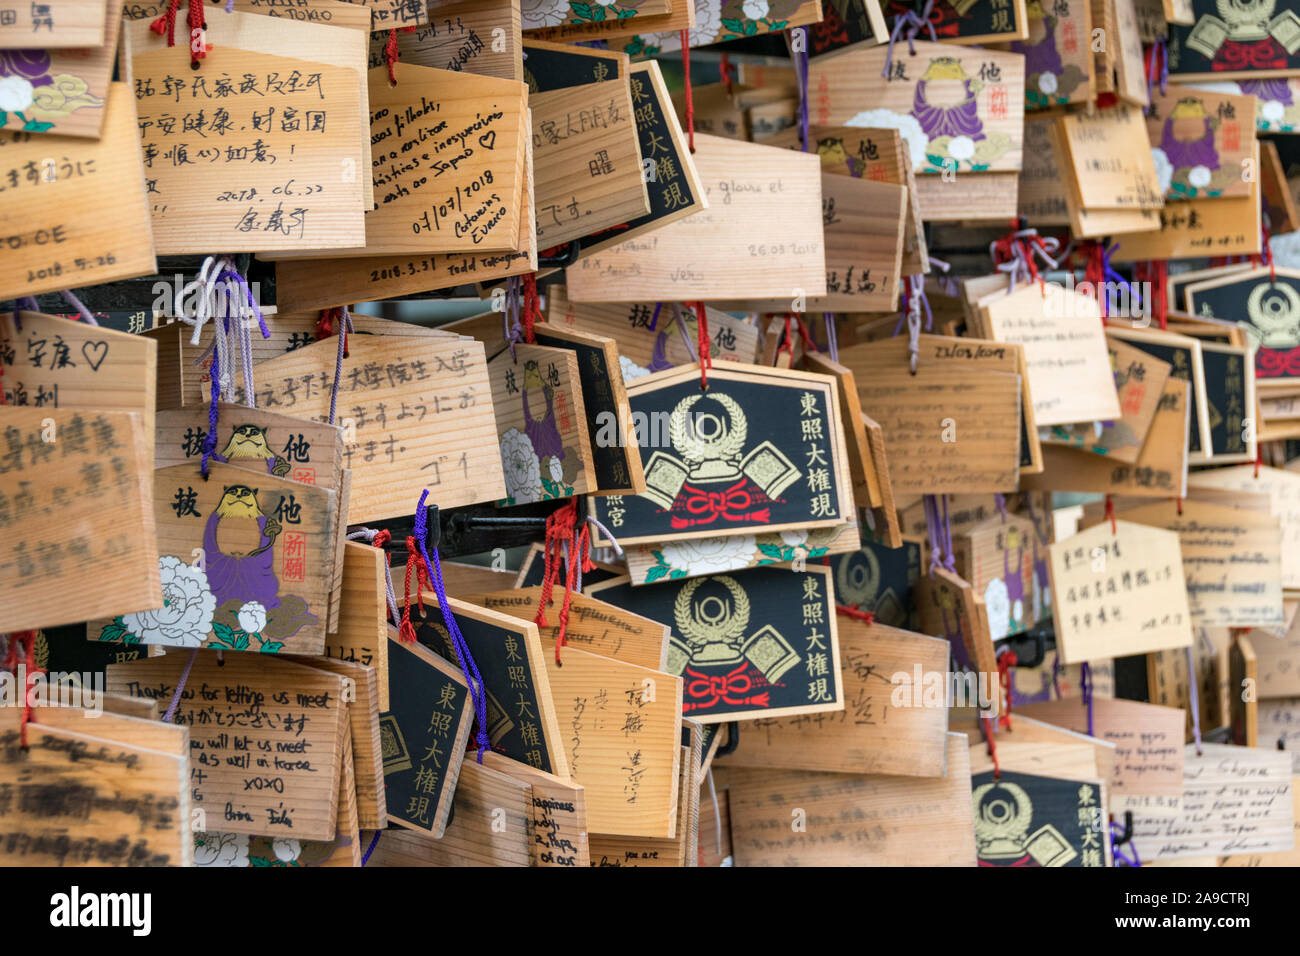 Votive en bois 'ema' plaques dans un temple à Tokyo, Japon Banque D'Images